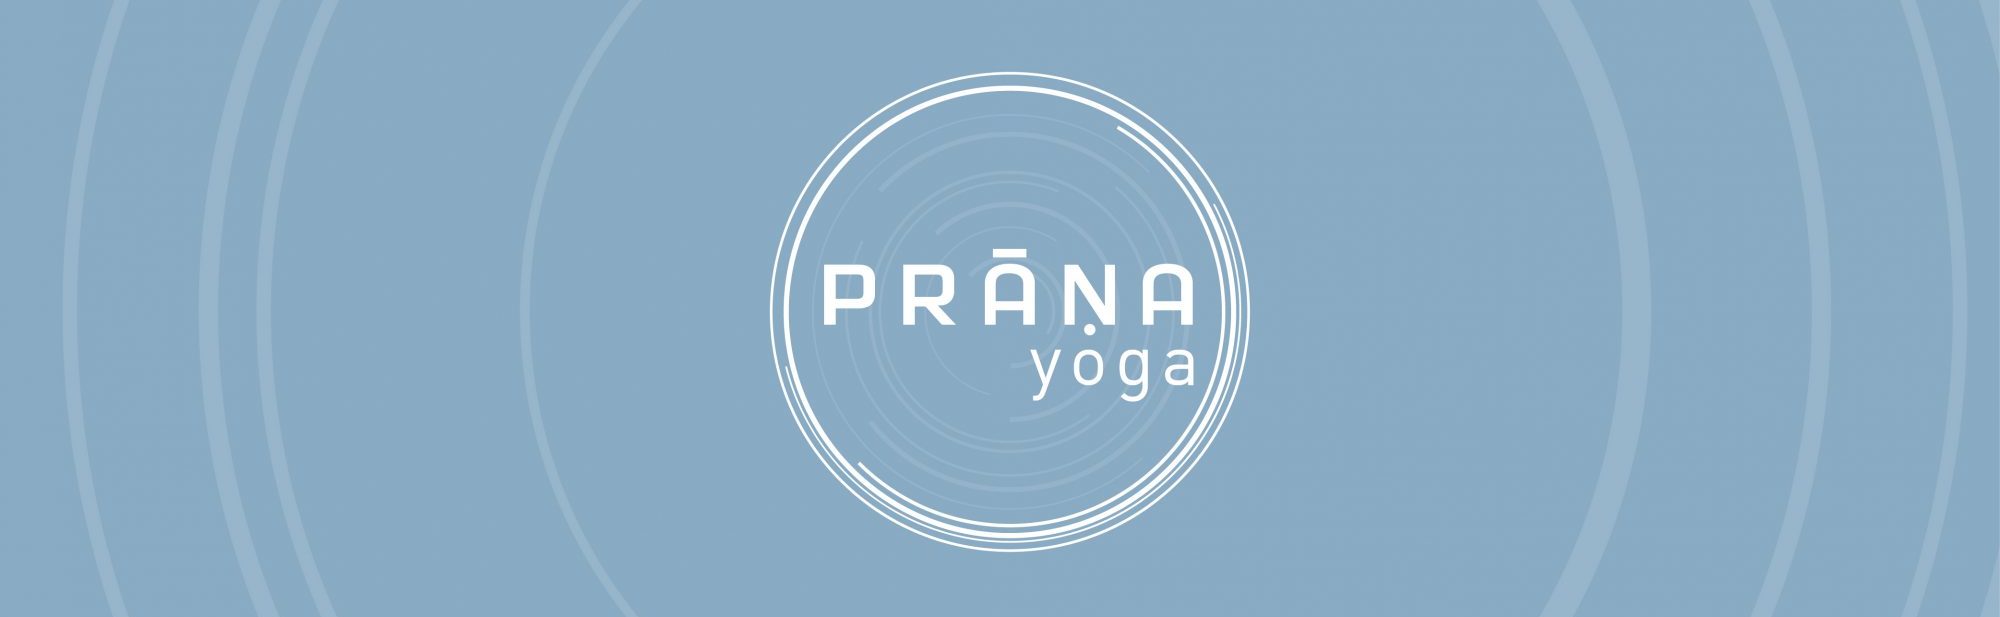 Prana Yoga – Prana é energia vital. Sopro de vida que faz sua morada divina  ao nível do coração em cada Ser. Levar prana à cidade através de práticas  de Yoga, Meditação